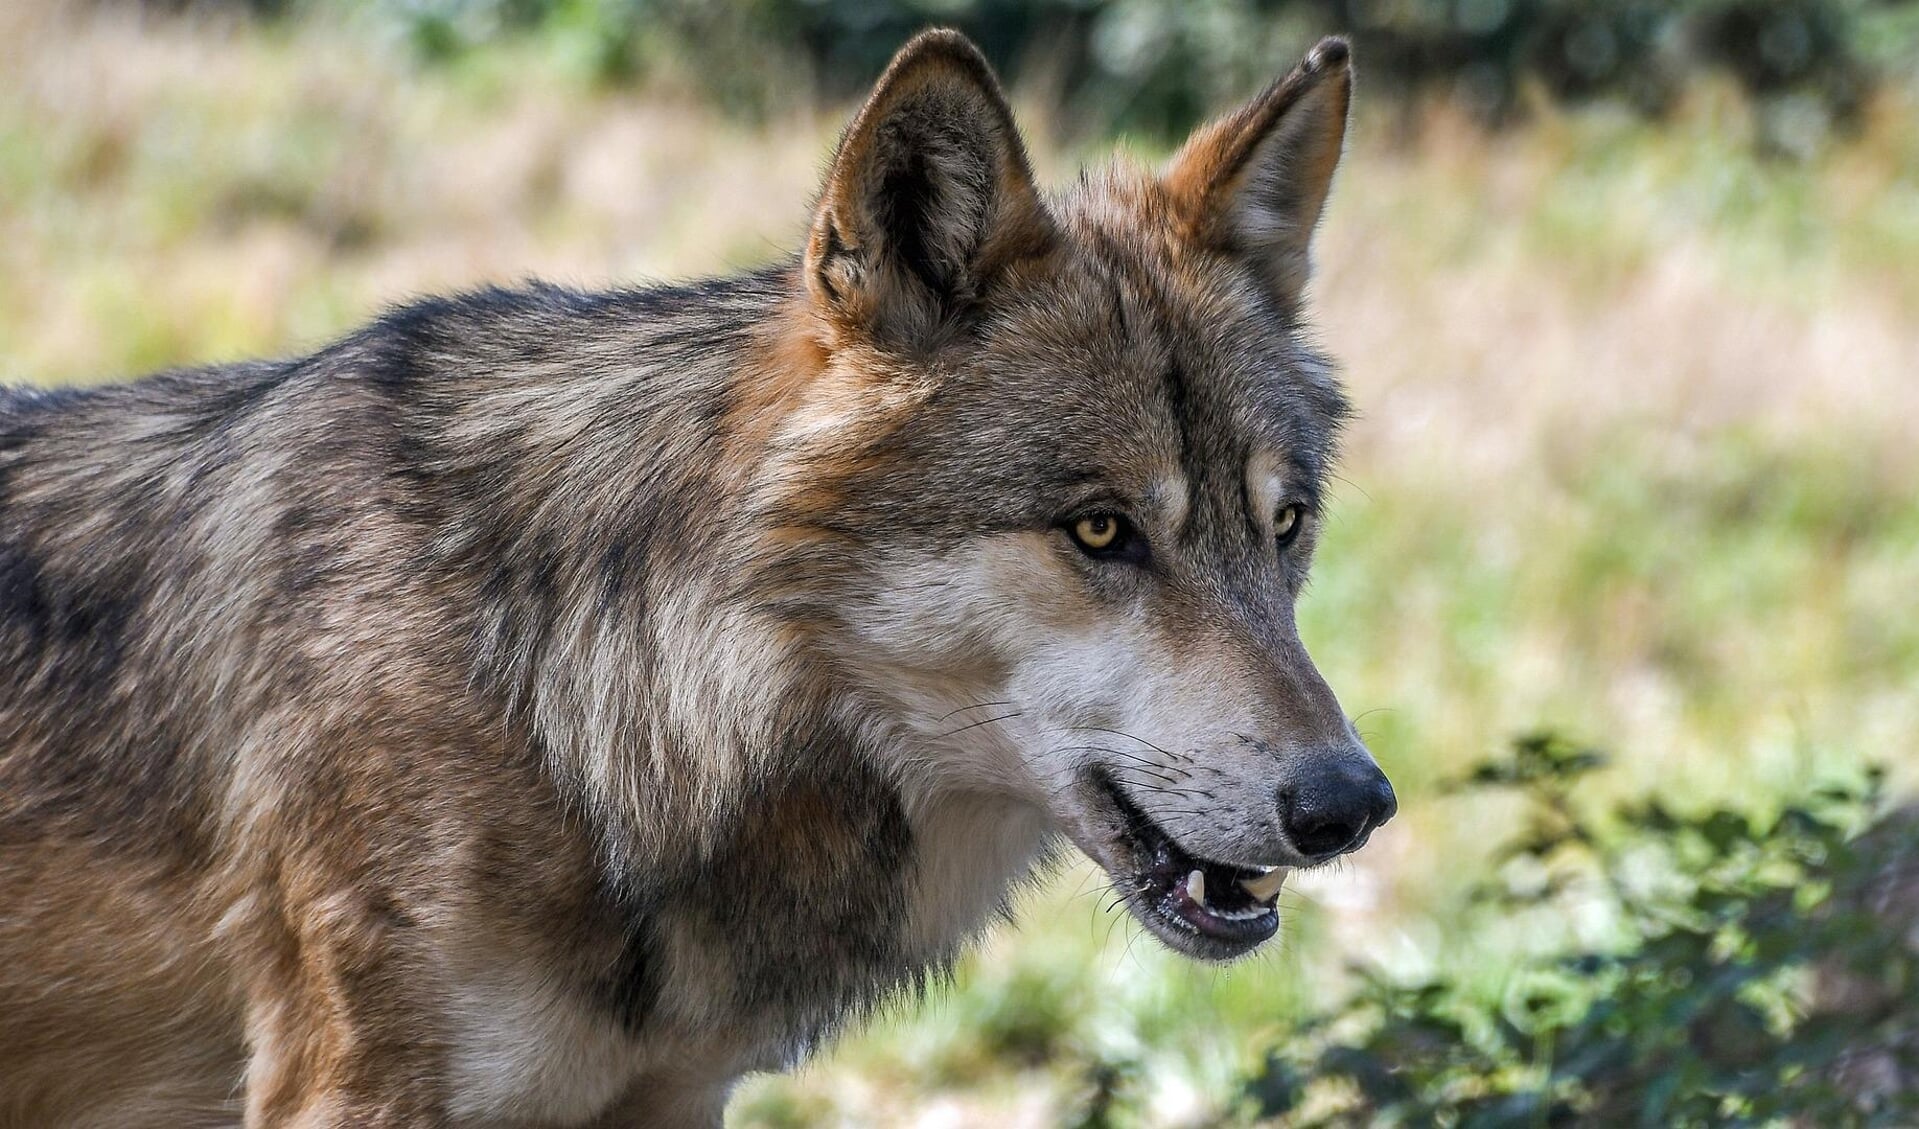 De wolf, voortaan ook in deze regio te zien.